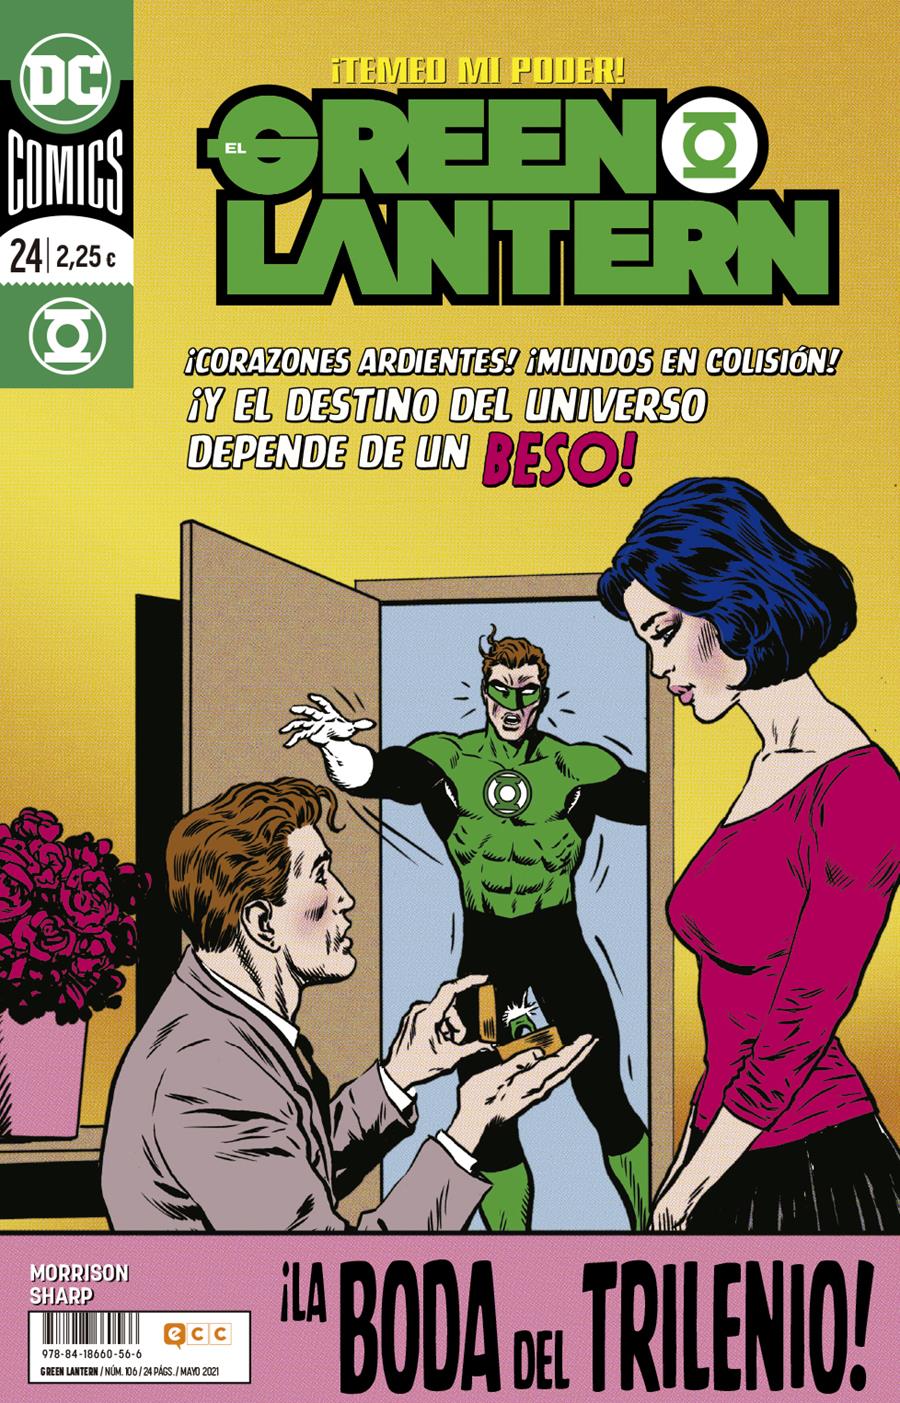 El Green Lantern núm. 106/ 24 | N0521-ECC37 | Grant Morrison / Liam Sharp | Terra de Còmic - Tu tienda de cómics online especializada en cómics, manga y merchandising